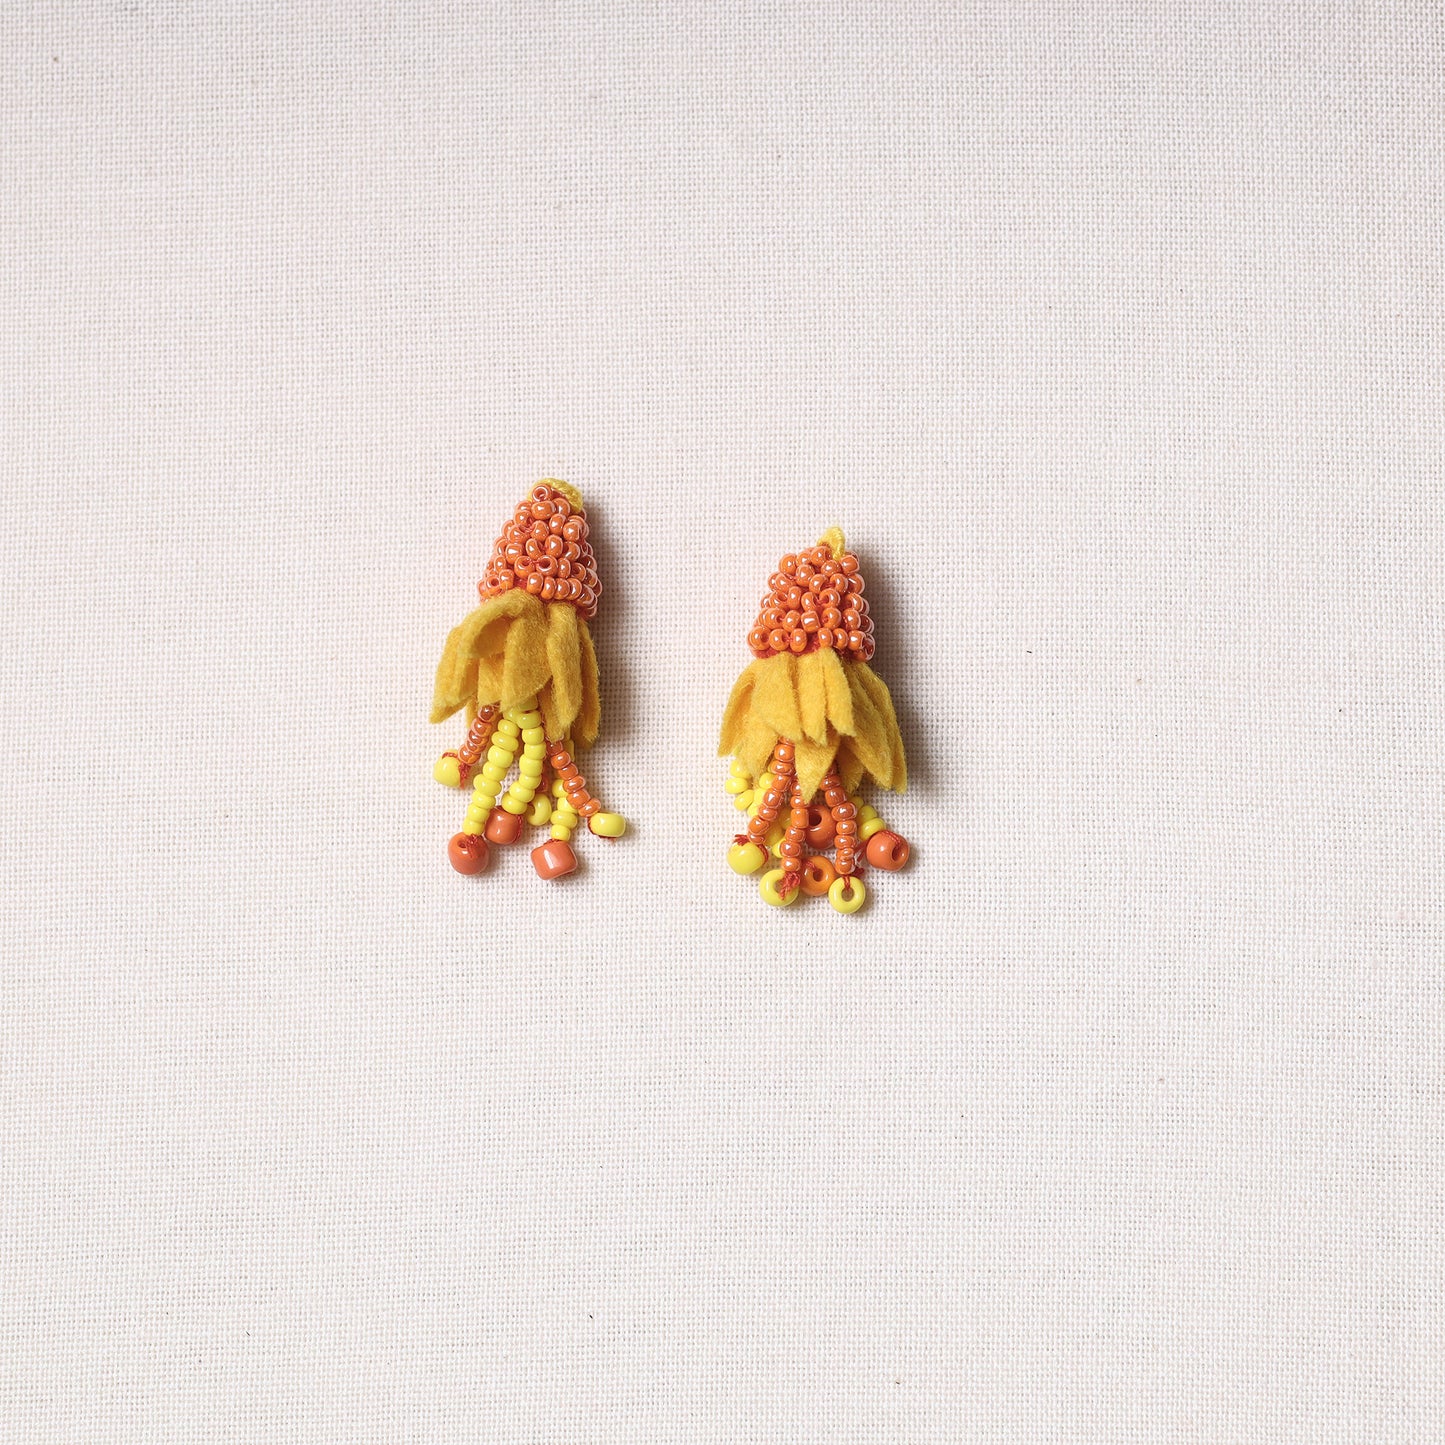 Hand Embroidered Felt & Beadwork Flower Buttons (Set of 2)